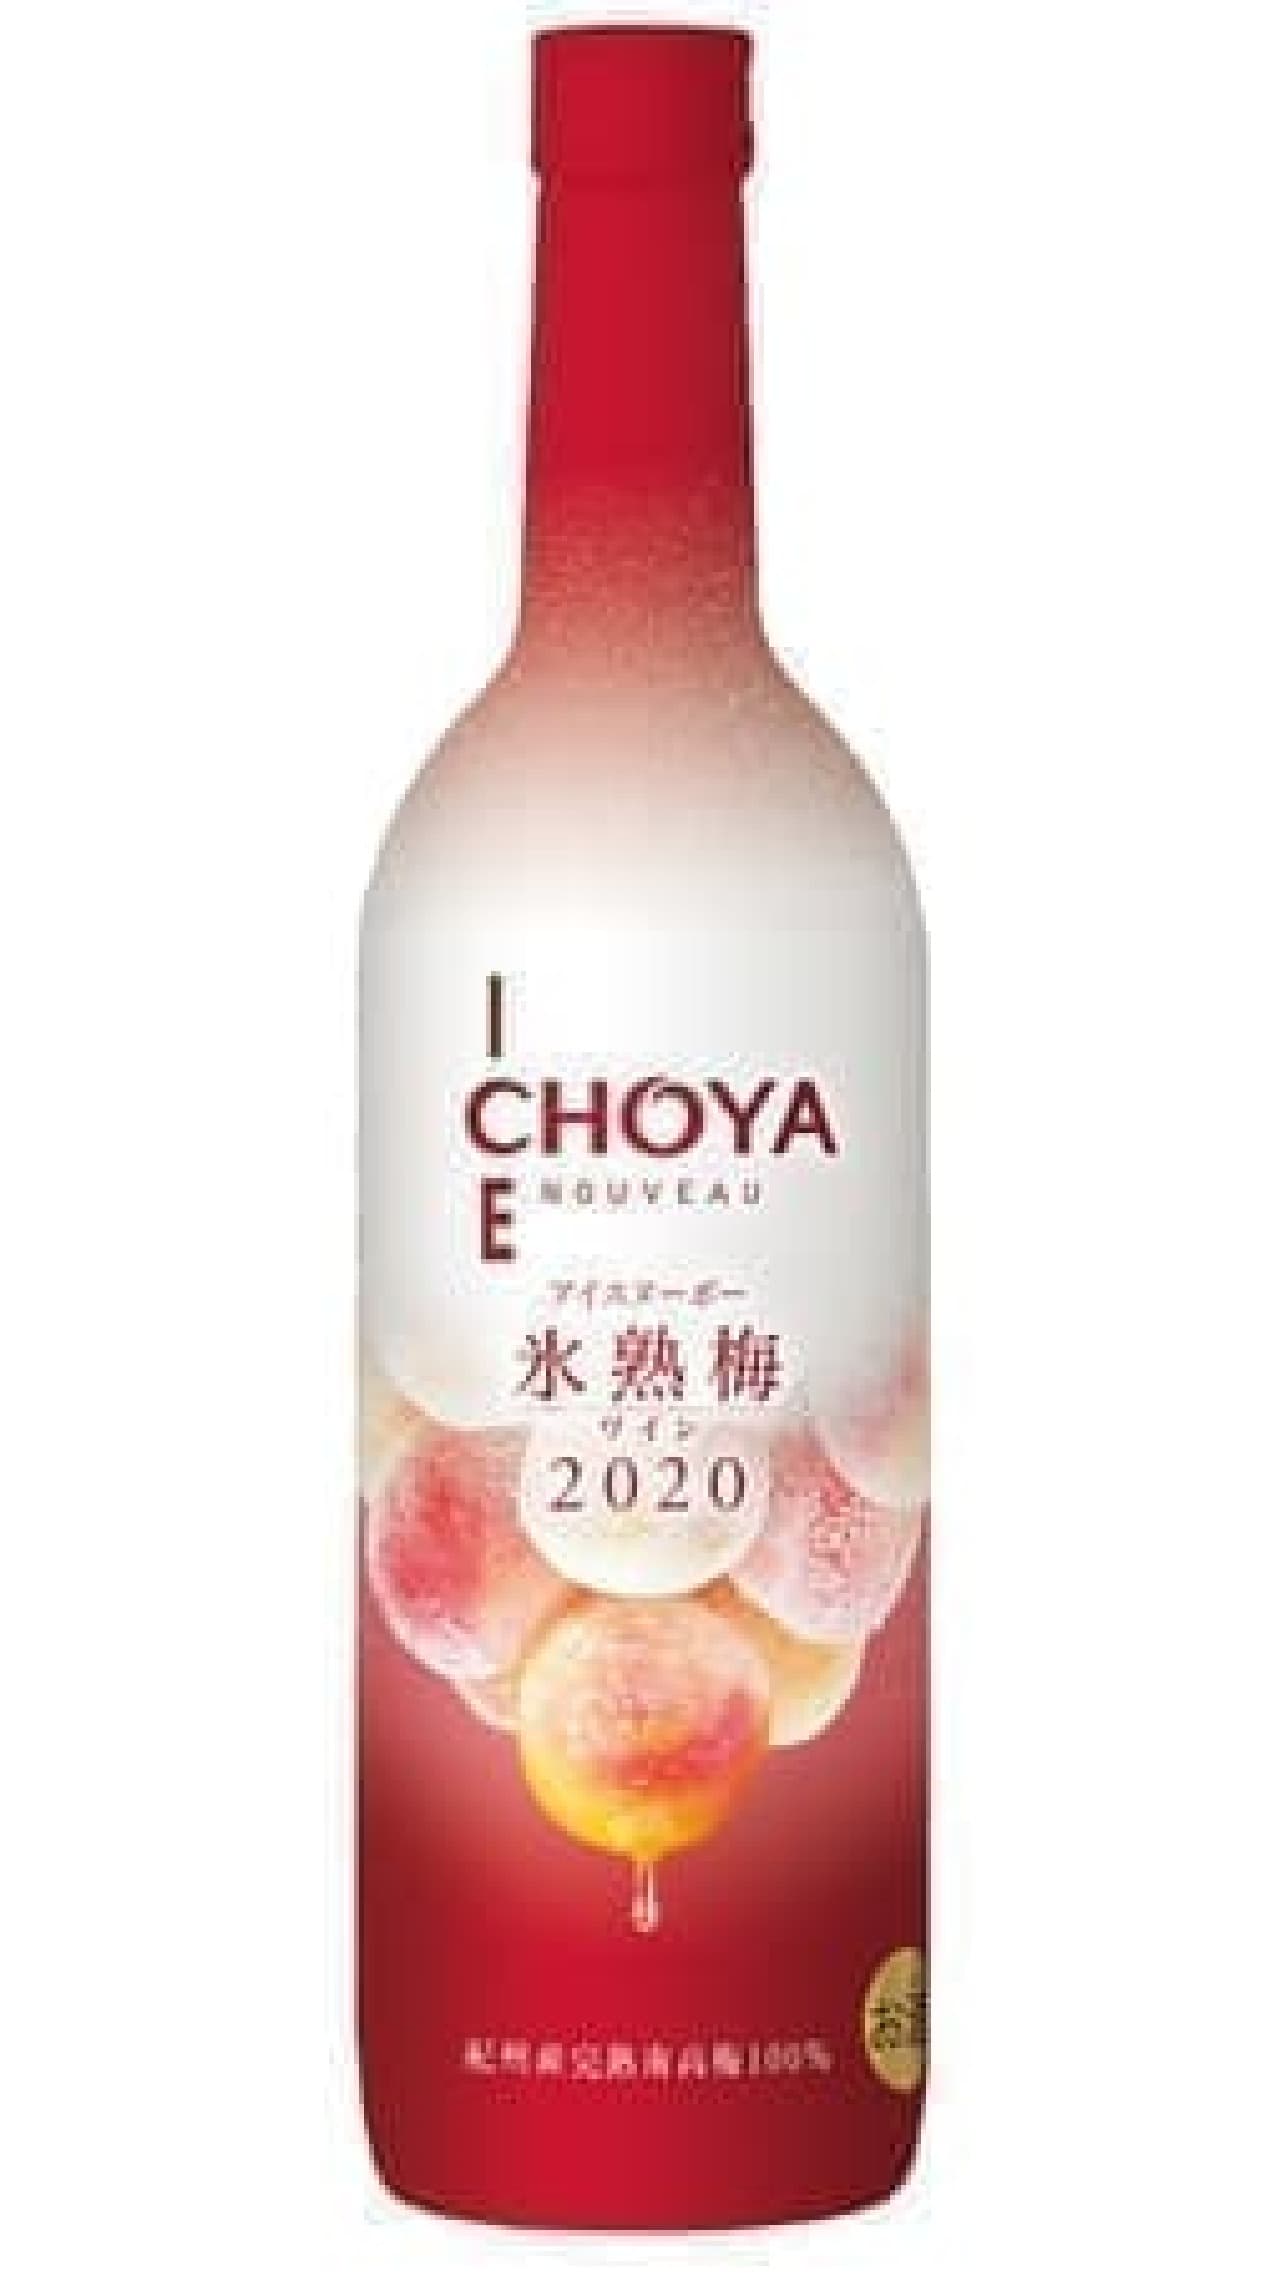 Choya Ice Nouveau Ice-ripe Plum Wine 2020